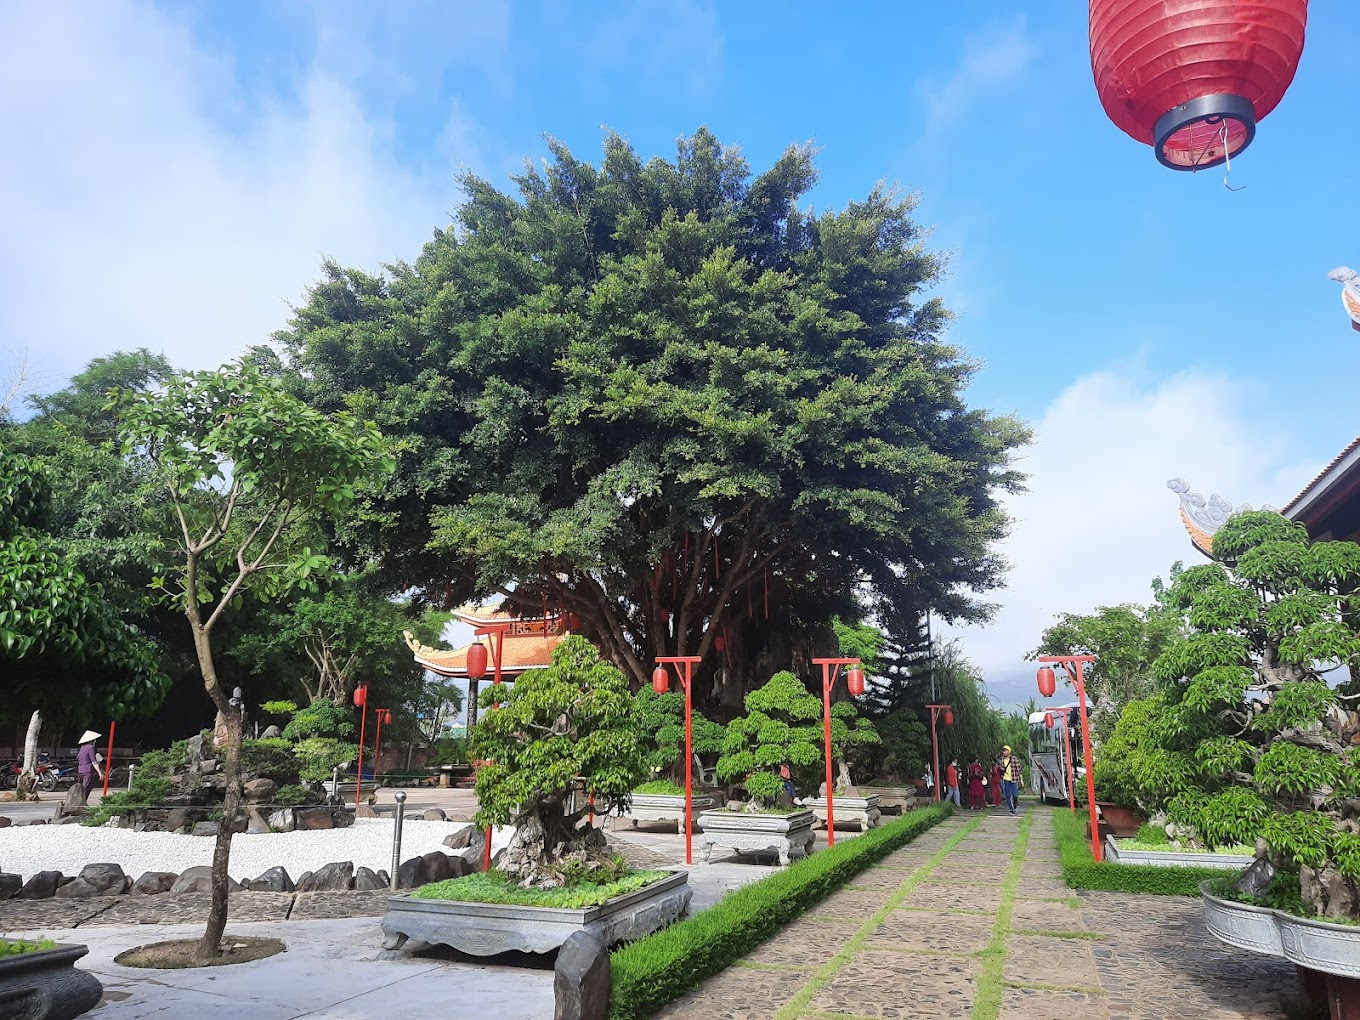 Khuôn viên chùa xanh mát với những cây bonsai độc đáo